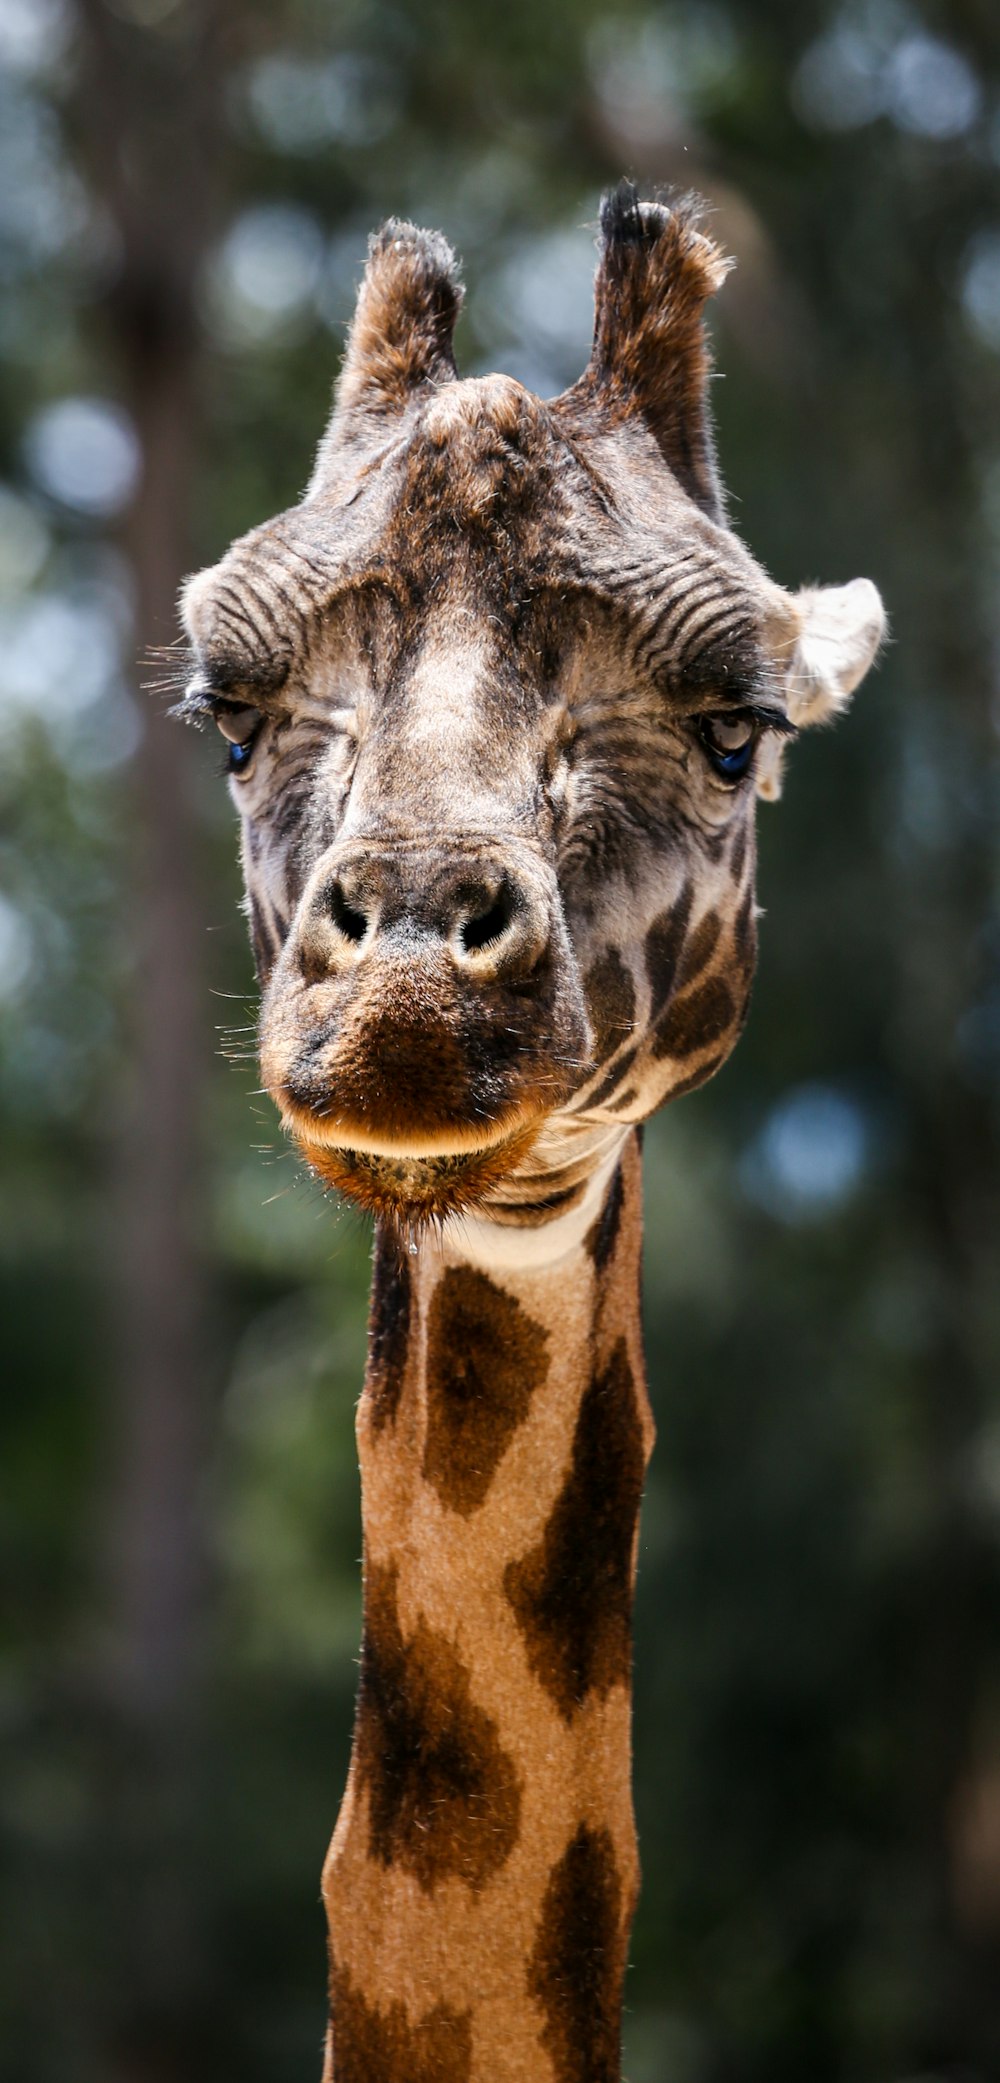 brown giraffe in tilt shift lens